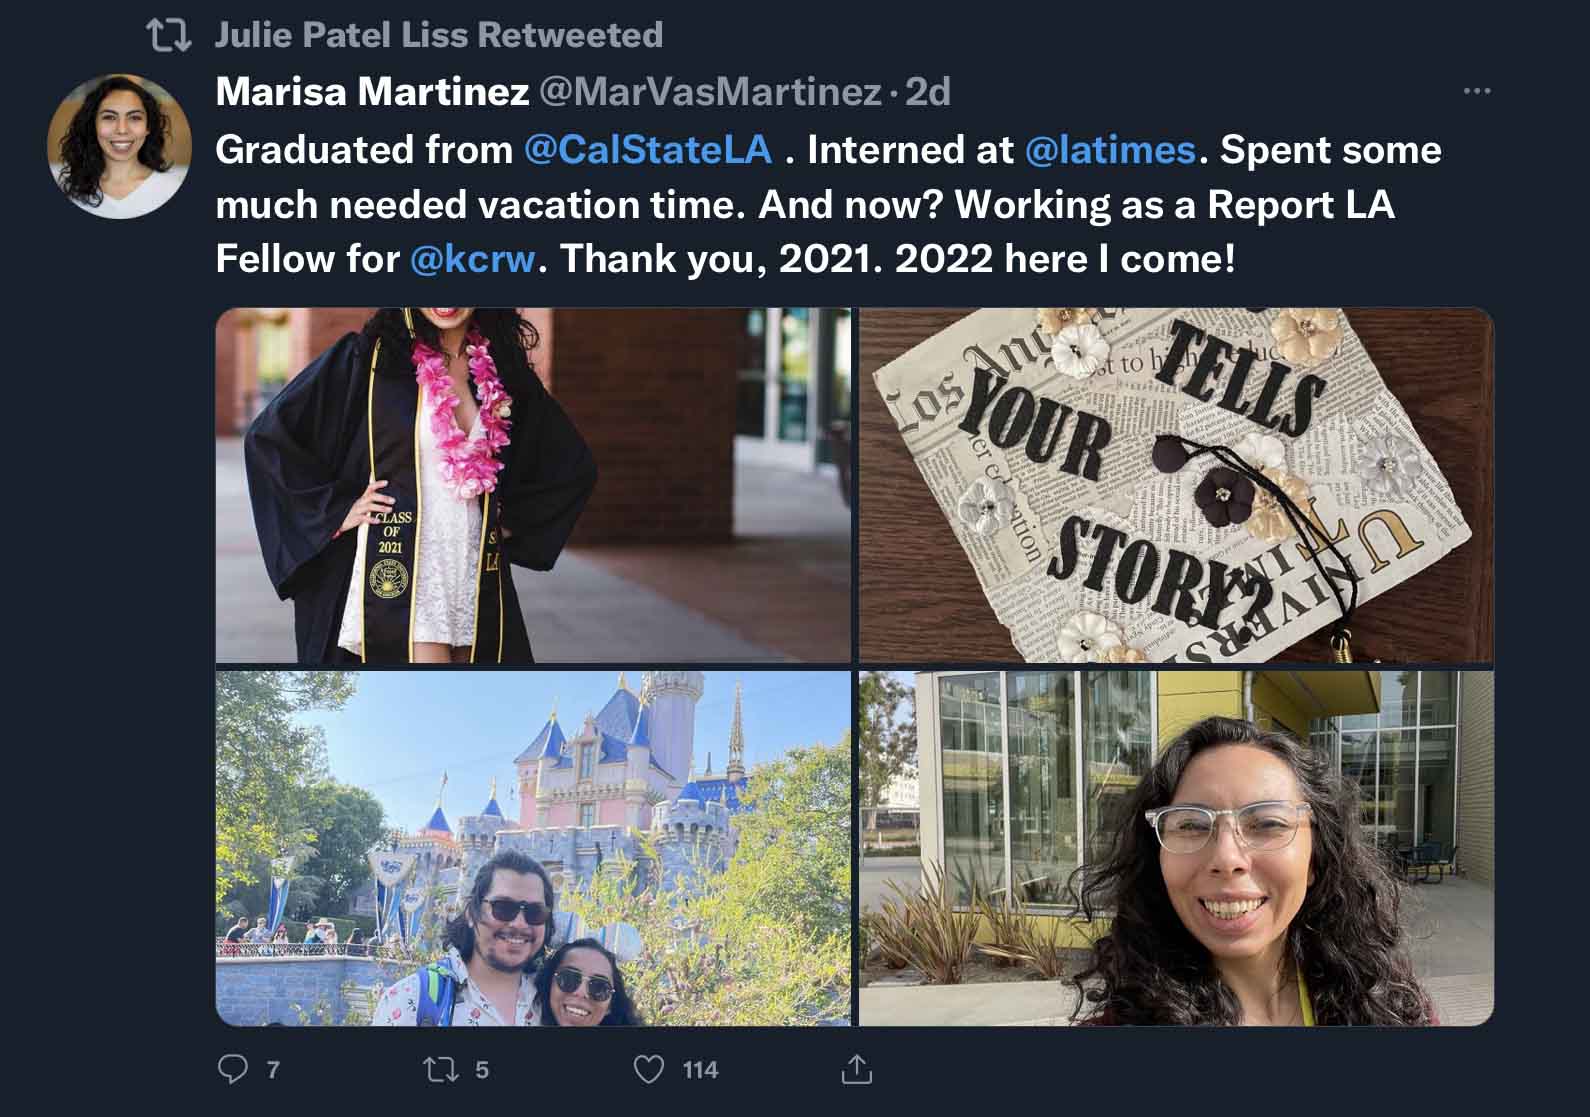 Marisa Martinez Twitter post